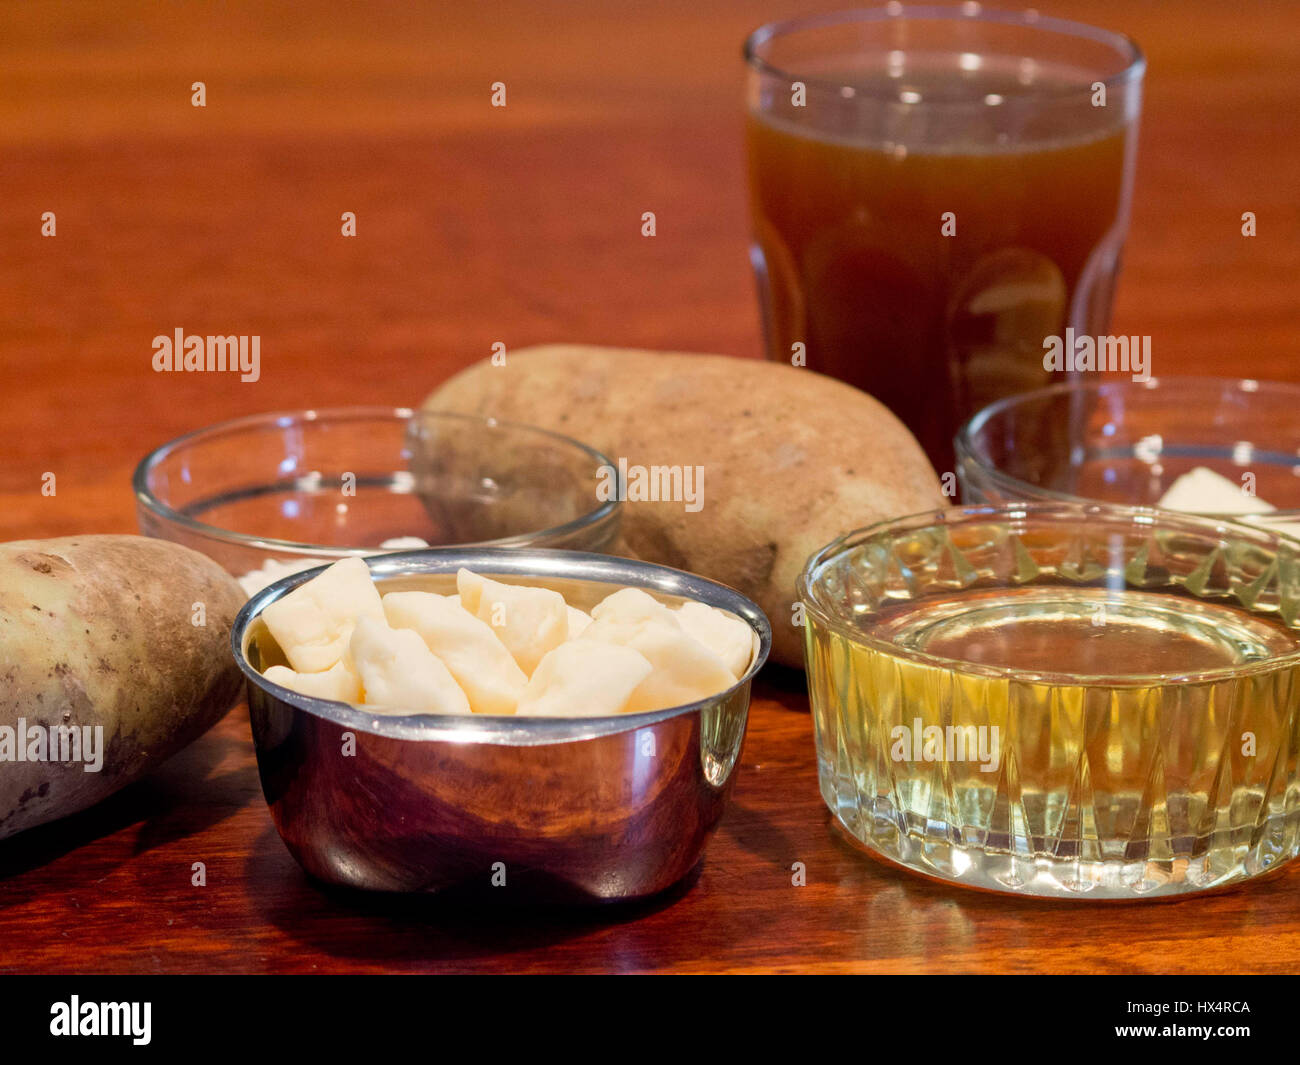 Ingrédients pour faire de la poutine y compris les différentes pâtes, l'huile, la pomme de terre, le bouillon de bœuf, de la farine, et le beurre. Banque D'Images